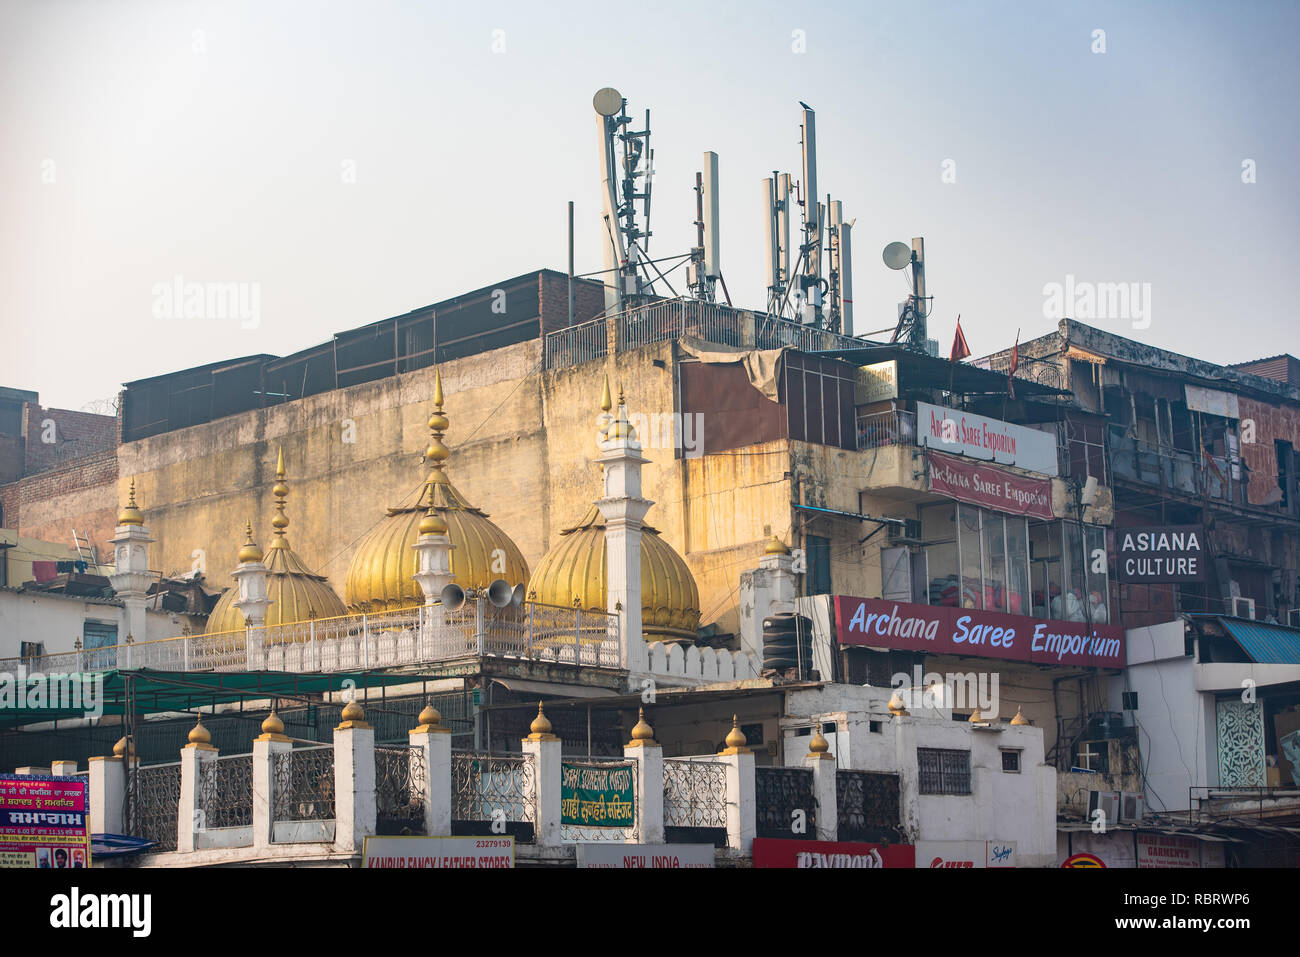 La partie vue de Gurudwara Sis Ganj dans Chandni Chowk, Delhi, Inde Banque D'Images